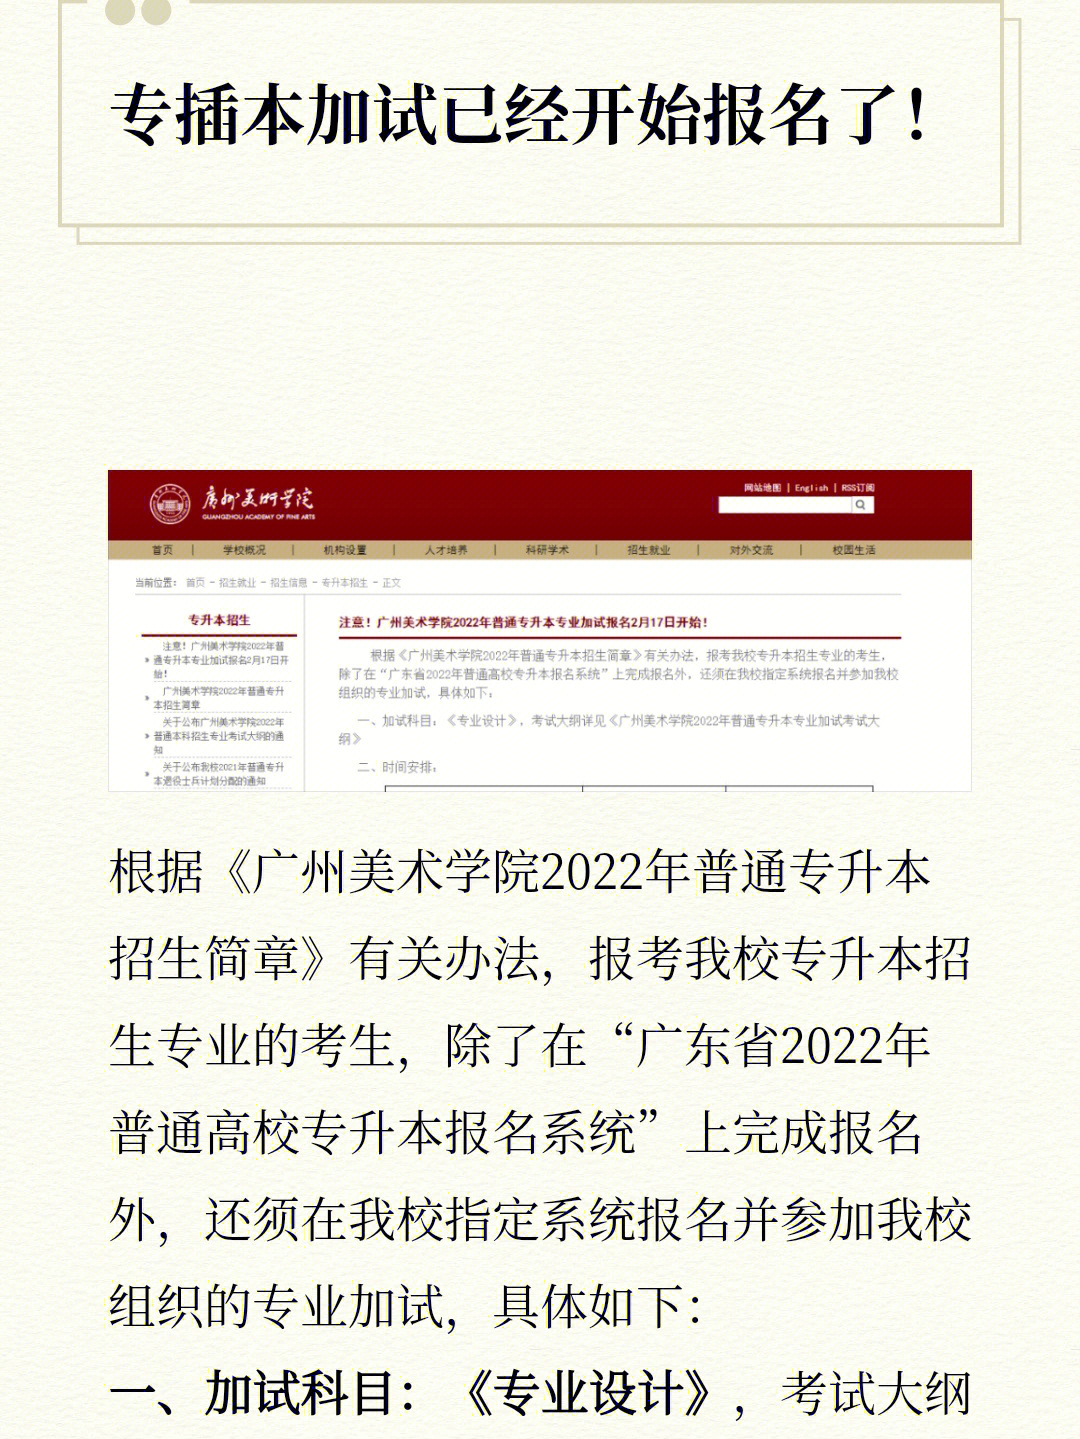 根据《广州美术学院2022年普通专升本招生简章》有关办法,报考我校